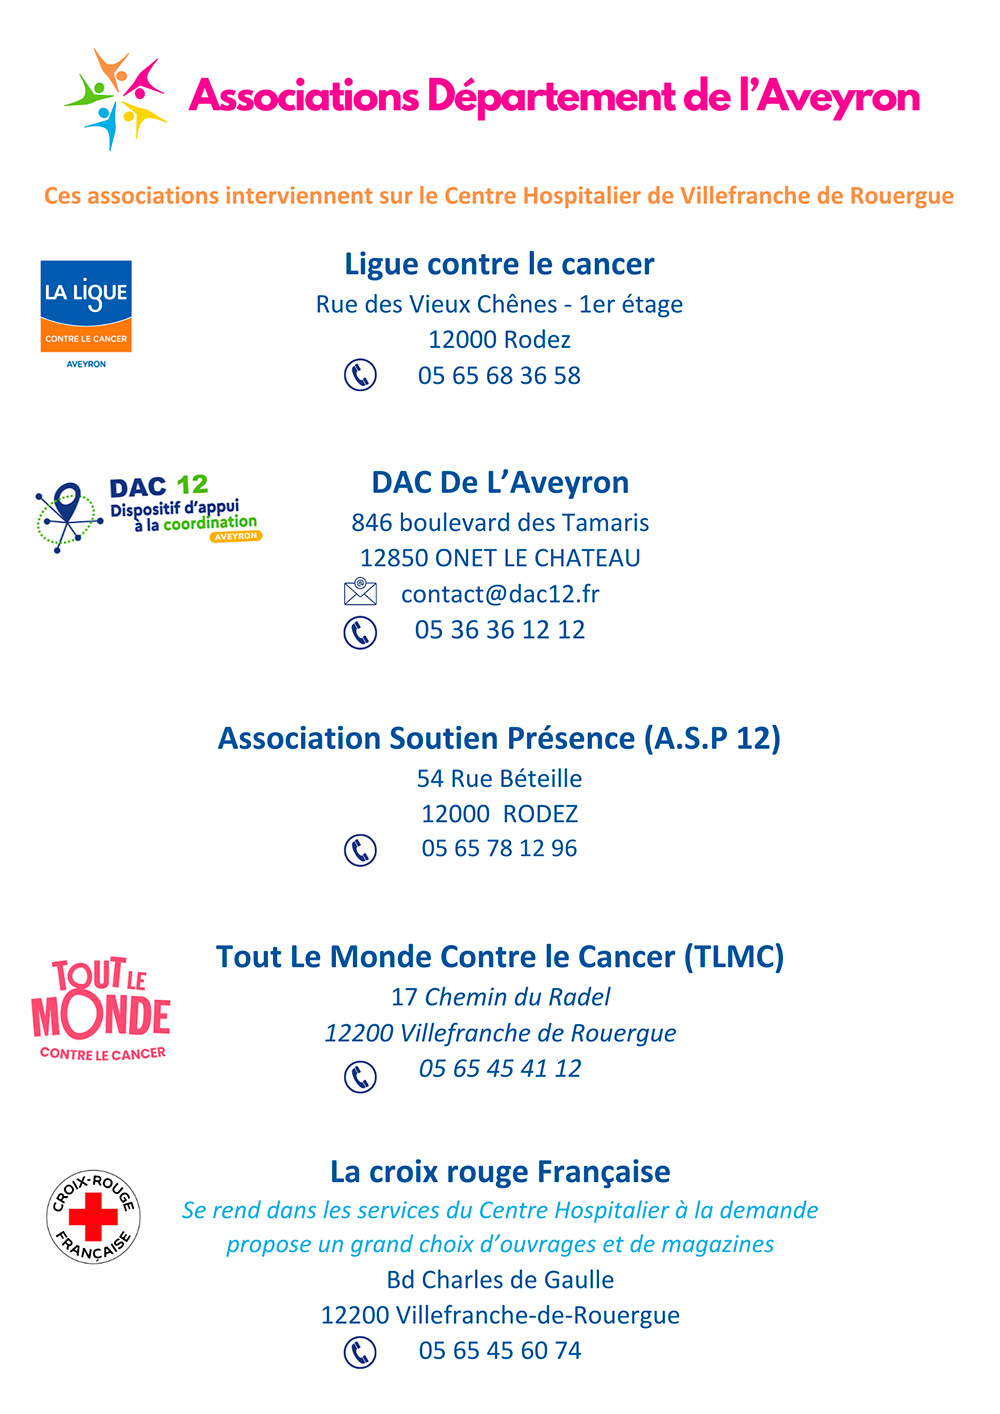 Cancer, DAC, ASP12, Tout le Monde Contre le Cancer, TLMC, Croix Rouge